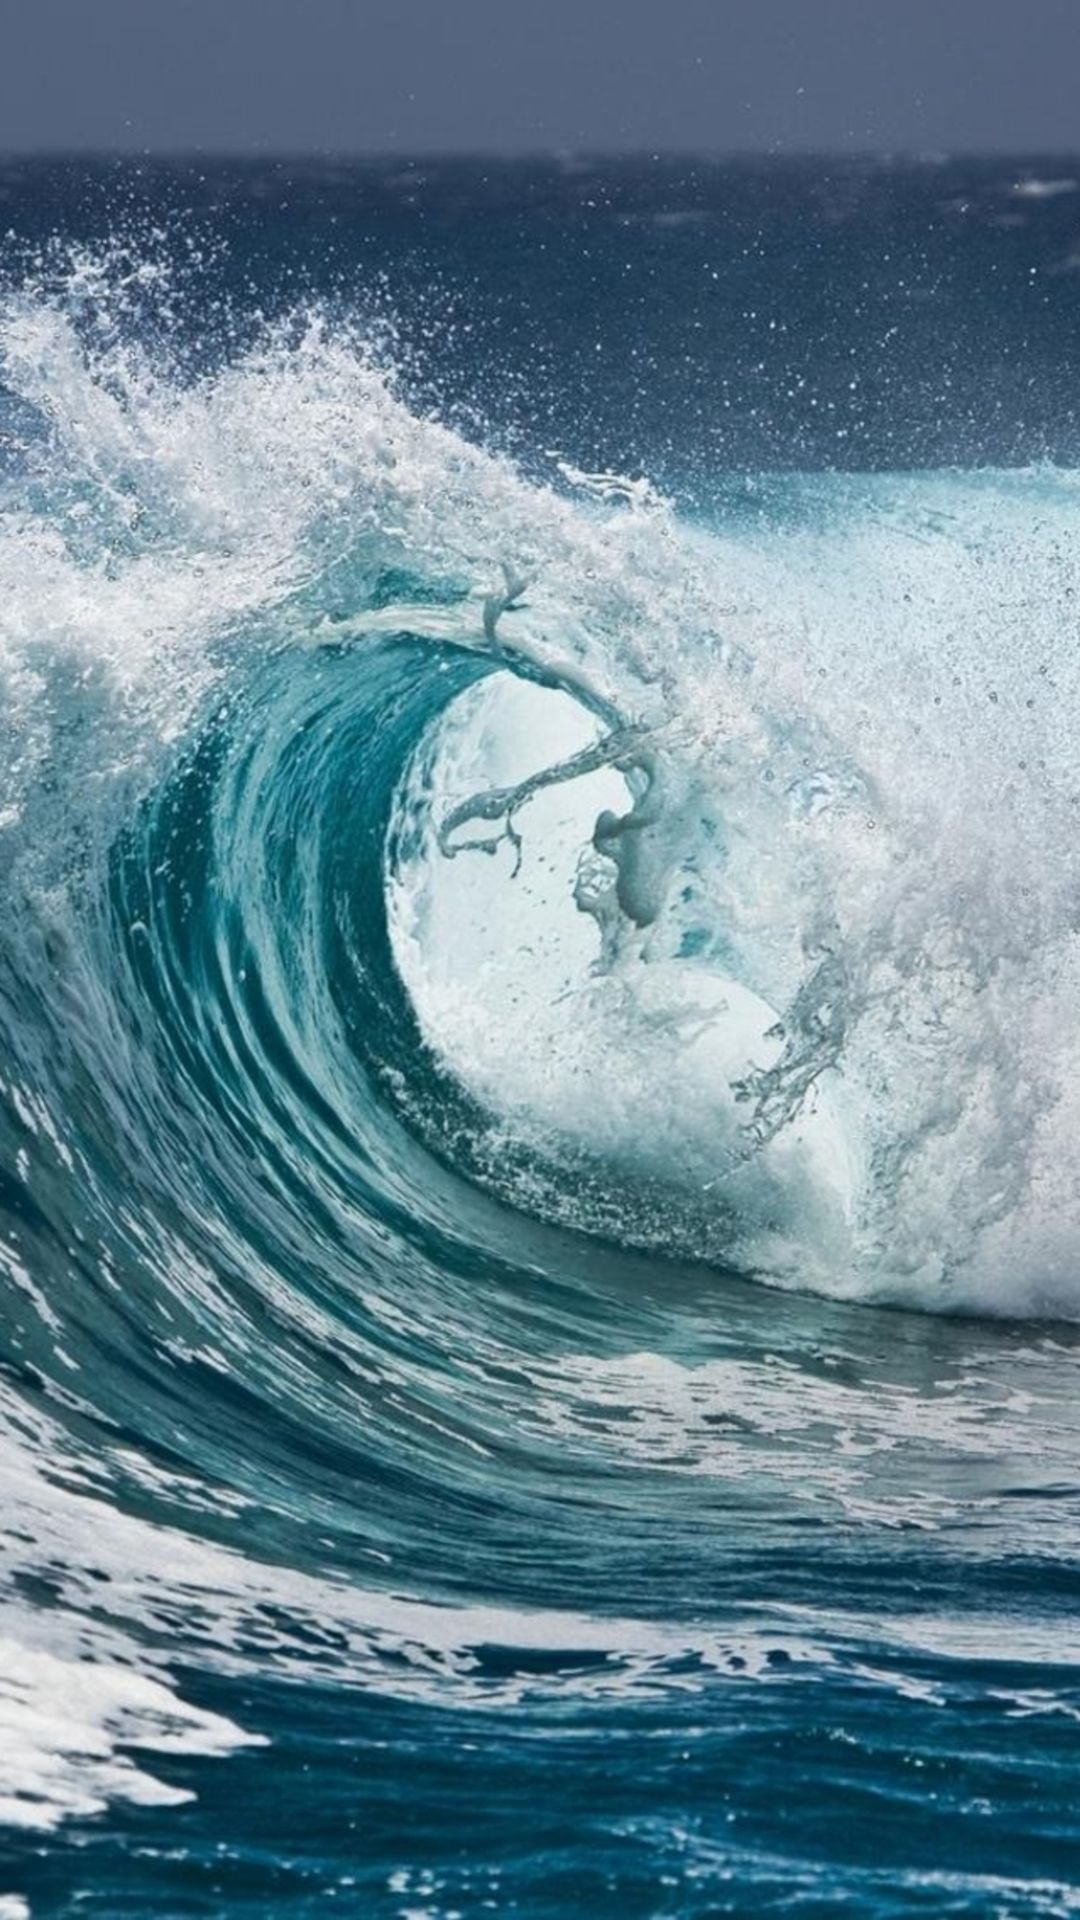 Nature Ocean Surging Wave Water Splash IPhone 6 Wallpaper Download. IPhone Wallpaper, IPad Wallpaper One Stop Download. Waves, Ocean Waves, Sea Waves